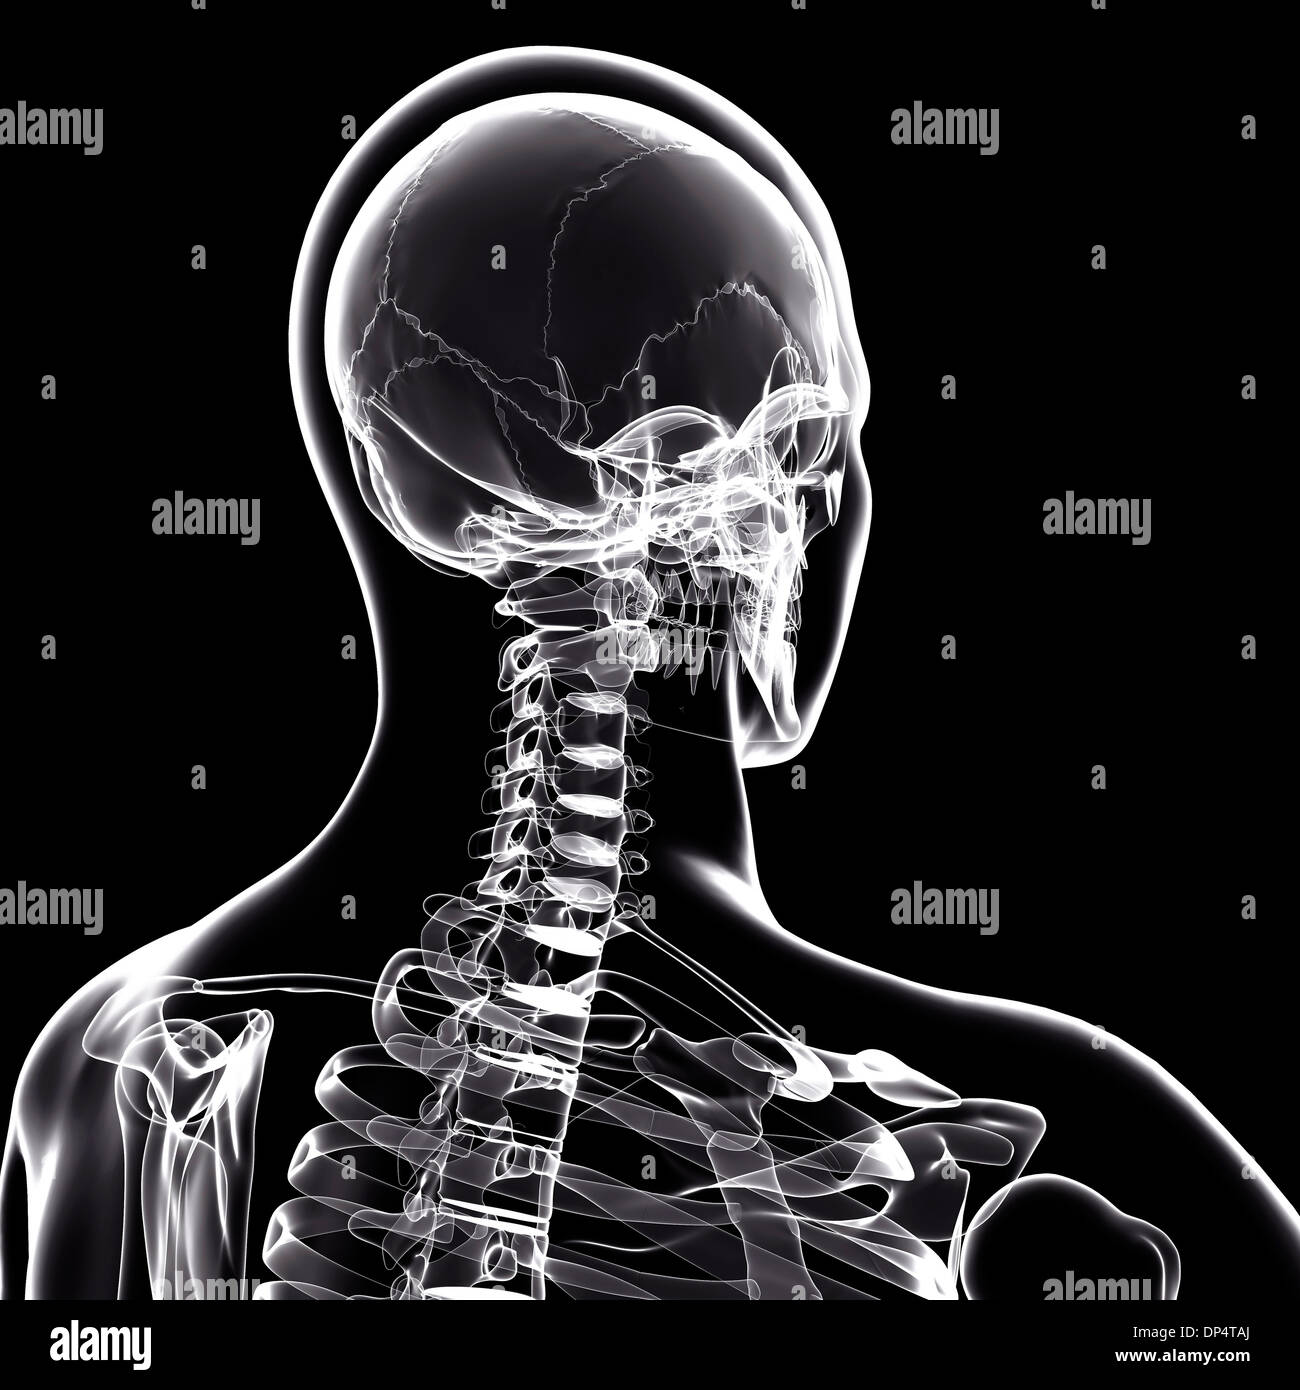 Human skeleton, artwork Stock Photo - Alamy